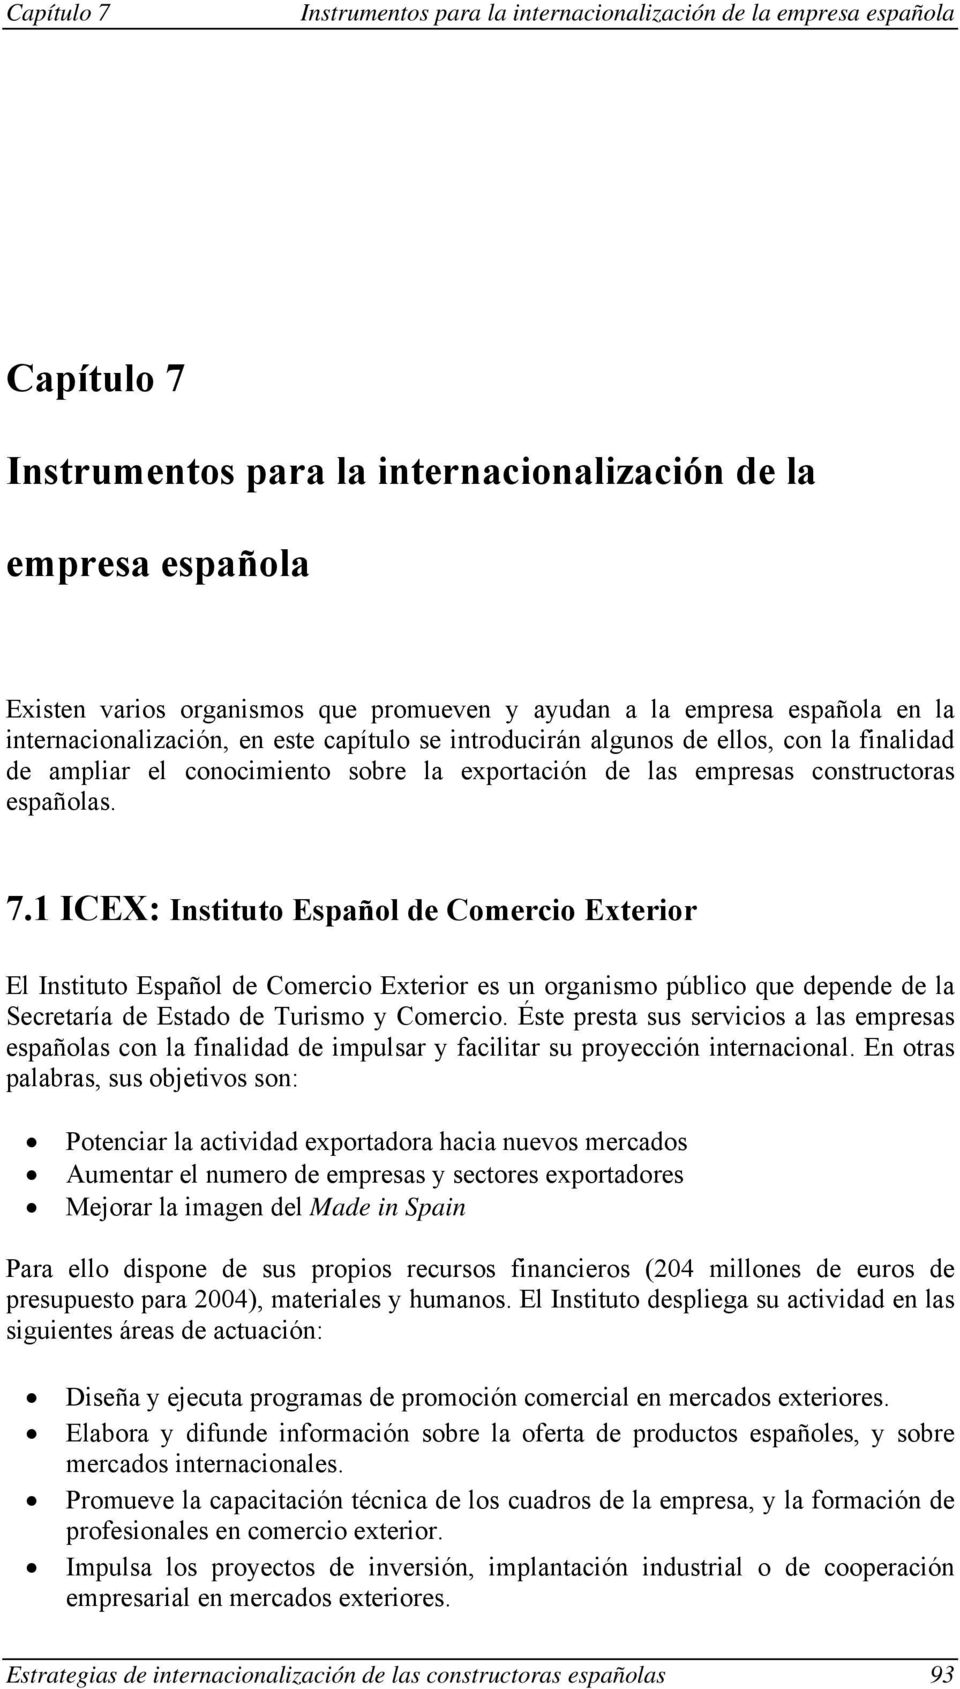 1 ICEX: Instituto Español de Comercio Exterior El Instituto Español de Comercio Exterior es un organismo público que depende de la Secretaría de Estado de Turismo y Comercio.